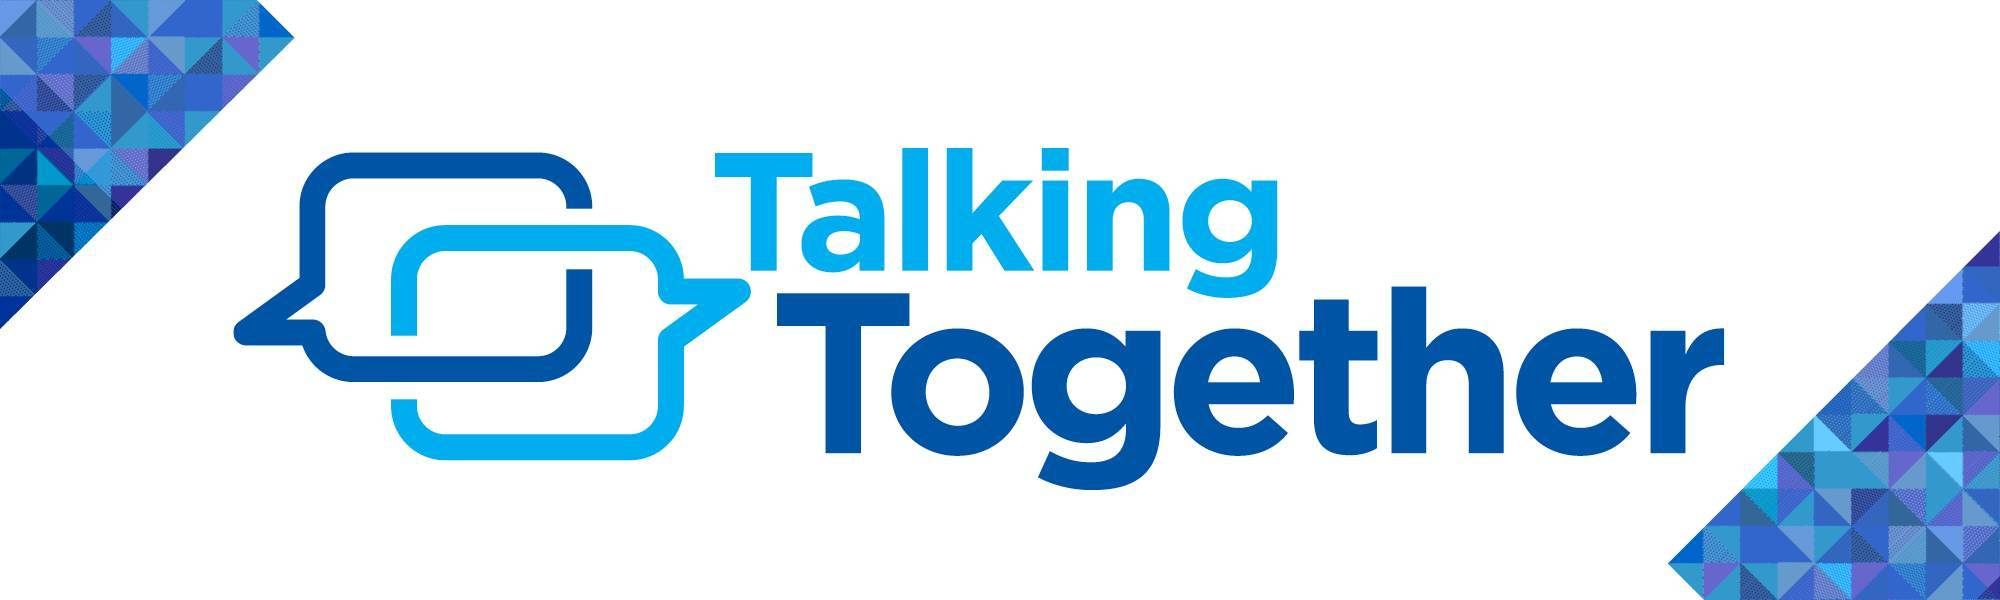 Taking Together Logo